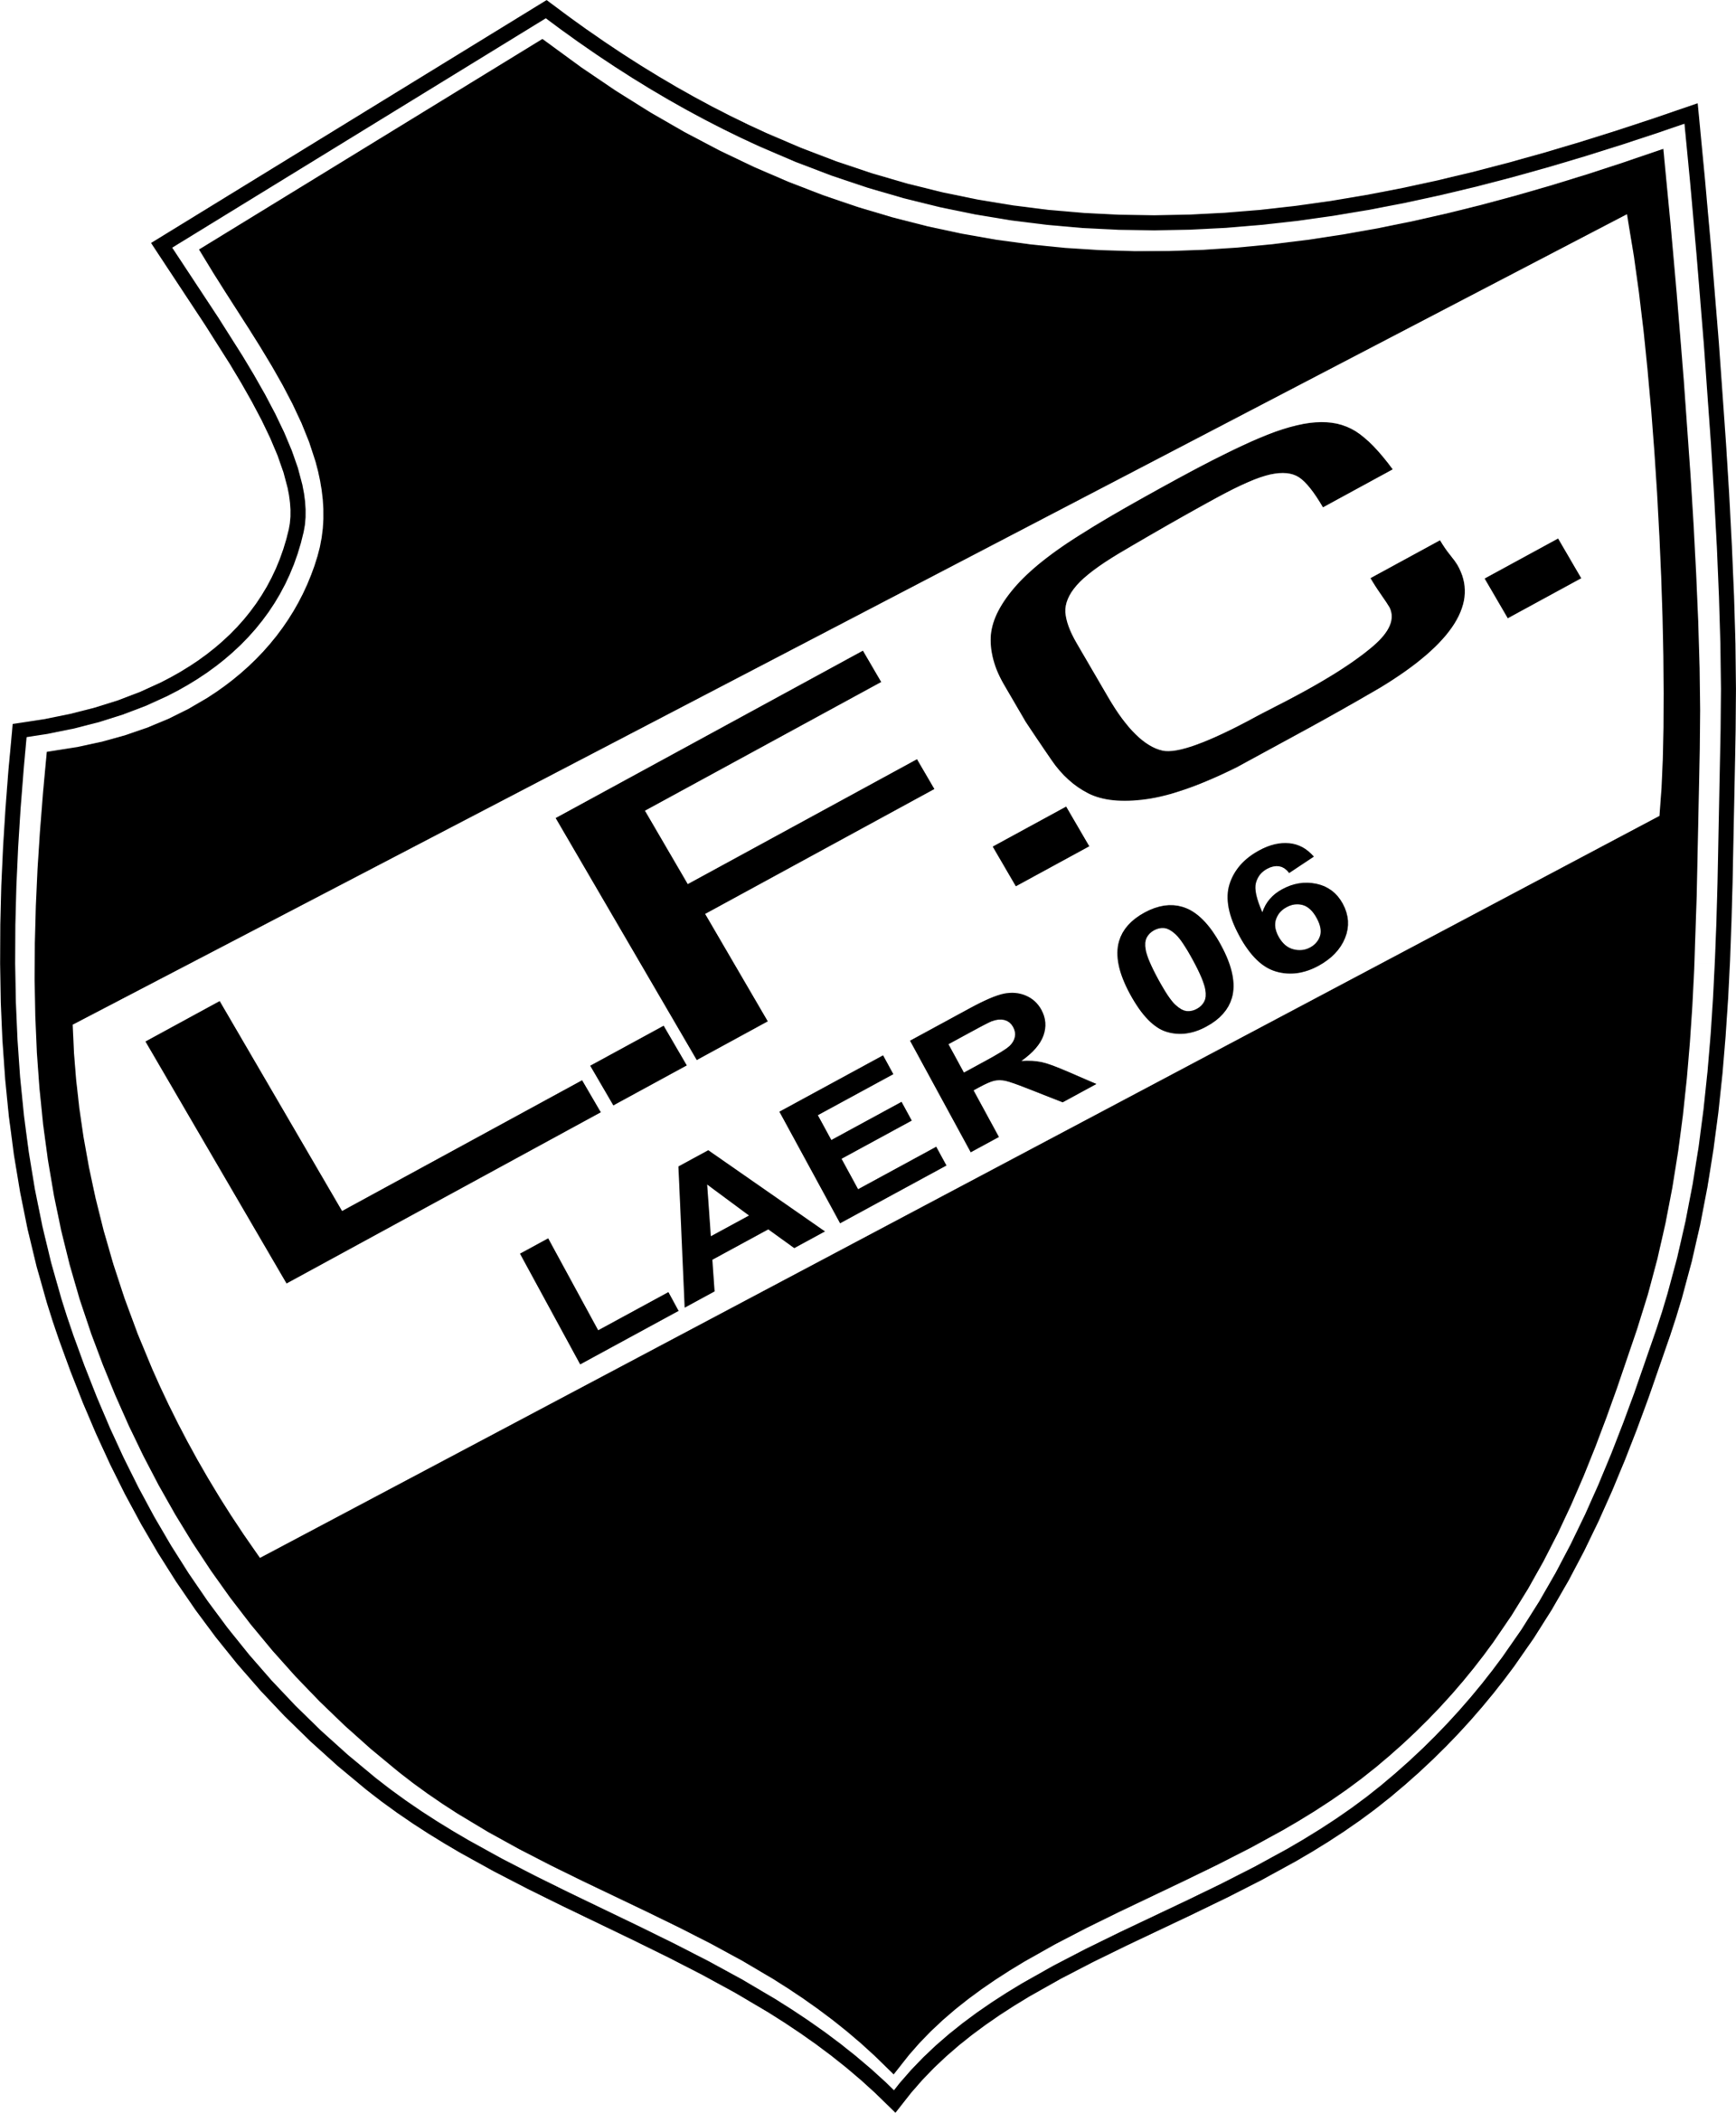 Logo LFC Laer 06.png